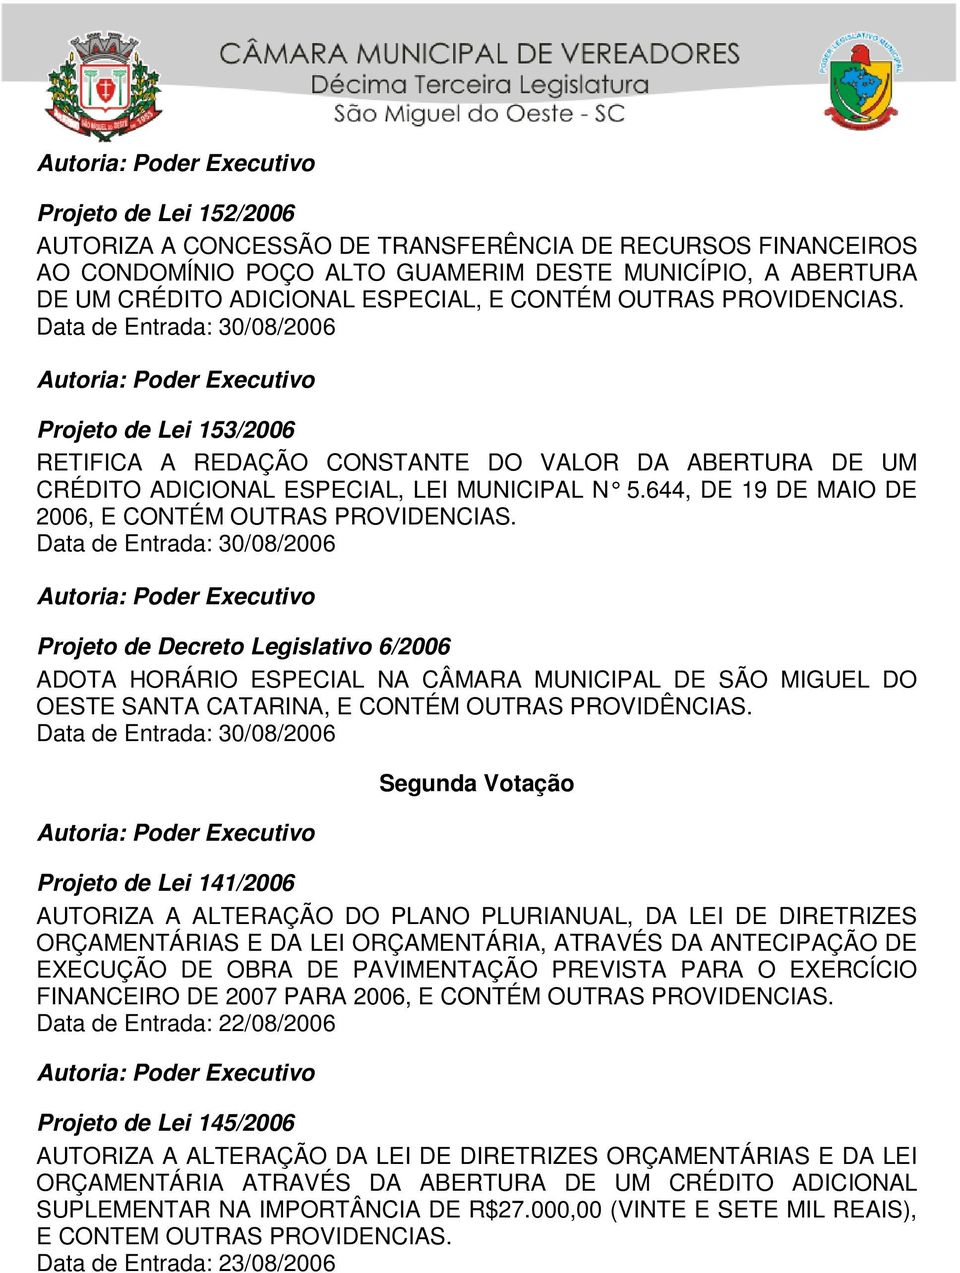 Projeto de Decreto Legislativo 6/2006 ADOTA HORÁRIO ESPECIAL NA CÂMARA MUNICIPAL DE SÃO MIGUEL DO OESTE SANTA CATARINA, E CONTÉM OUTRAS PROVIDÊNCIAS.